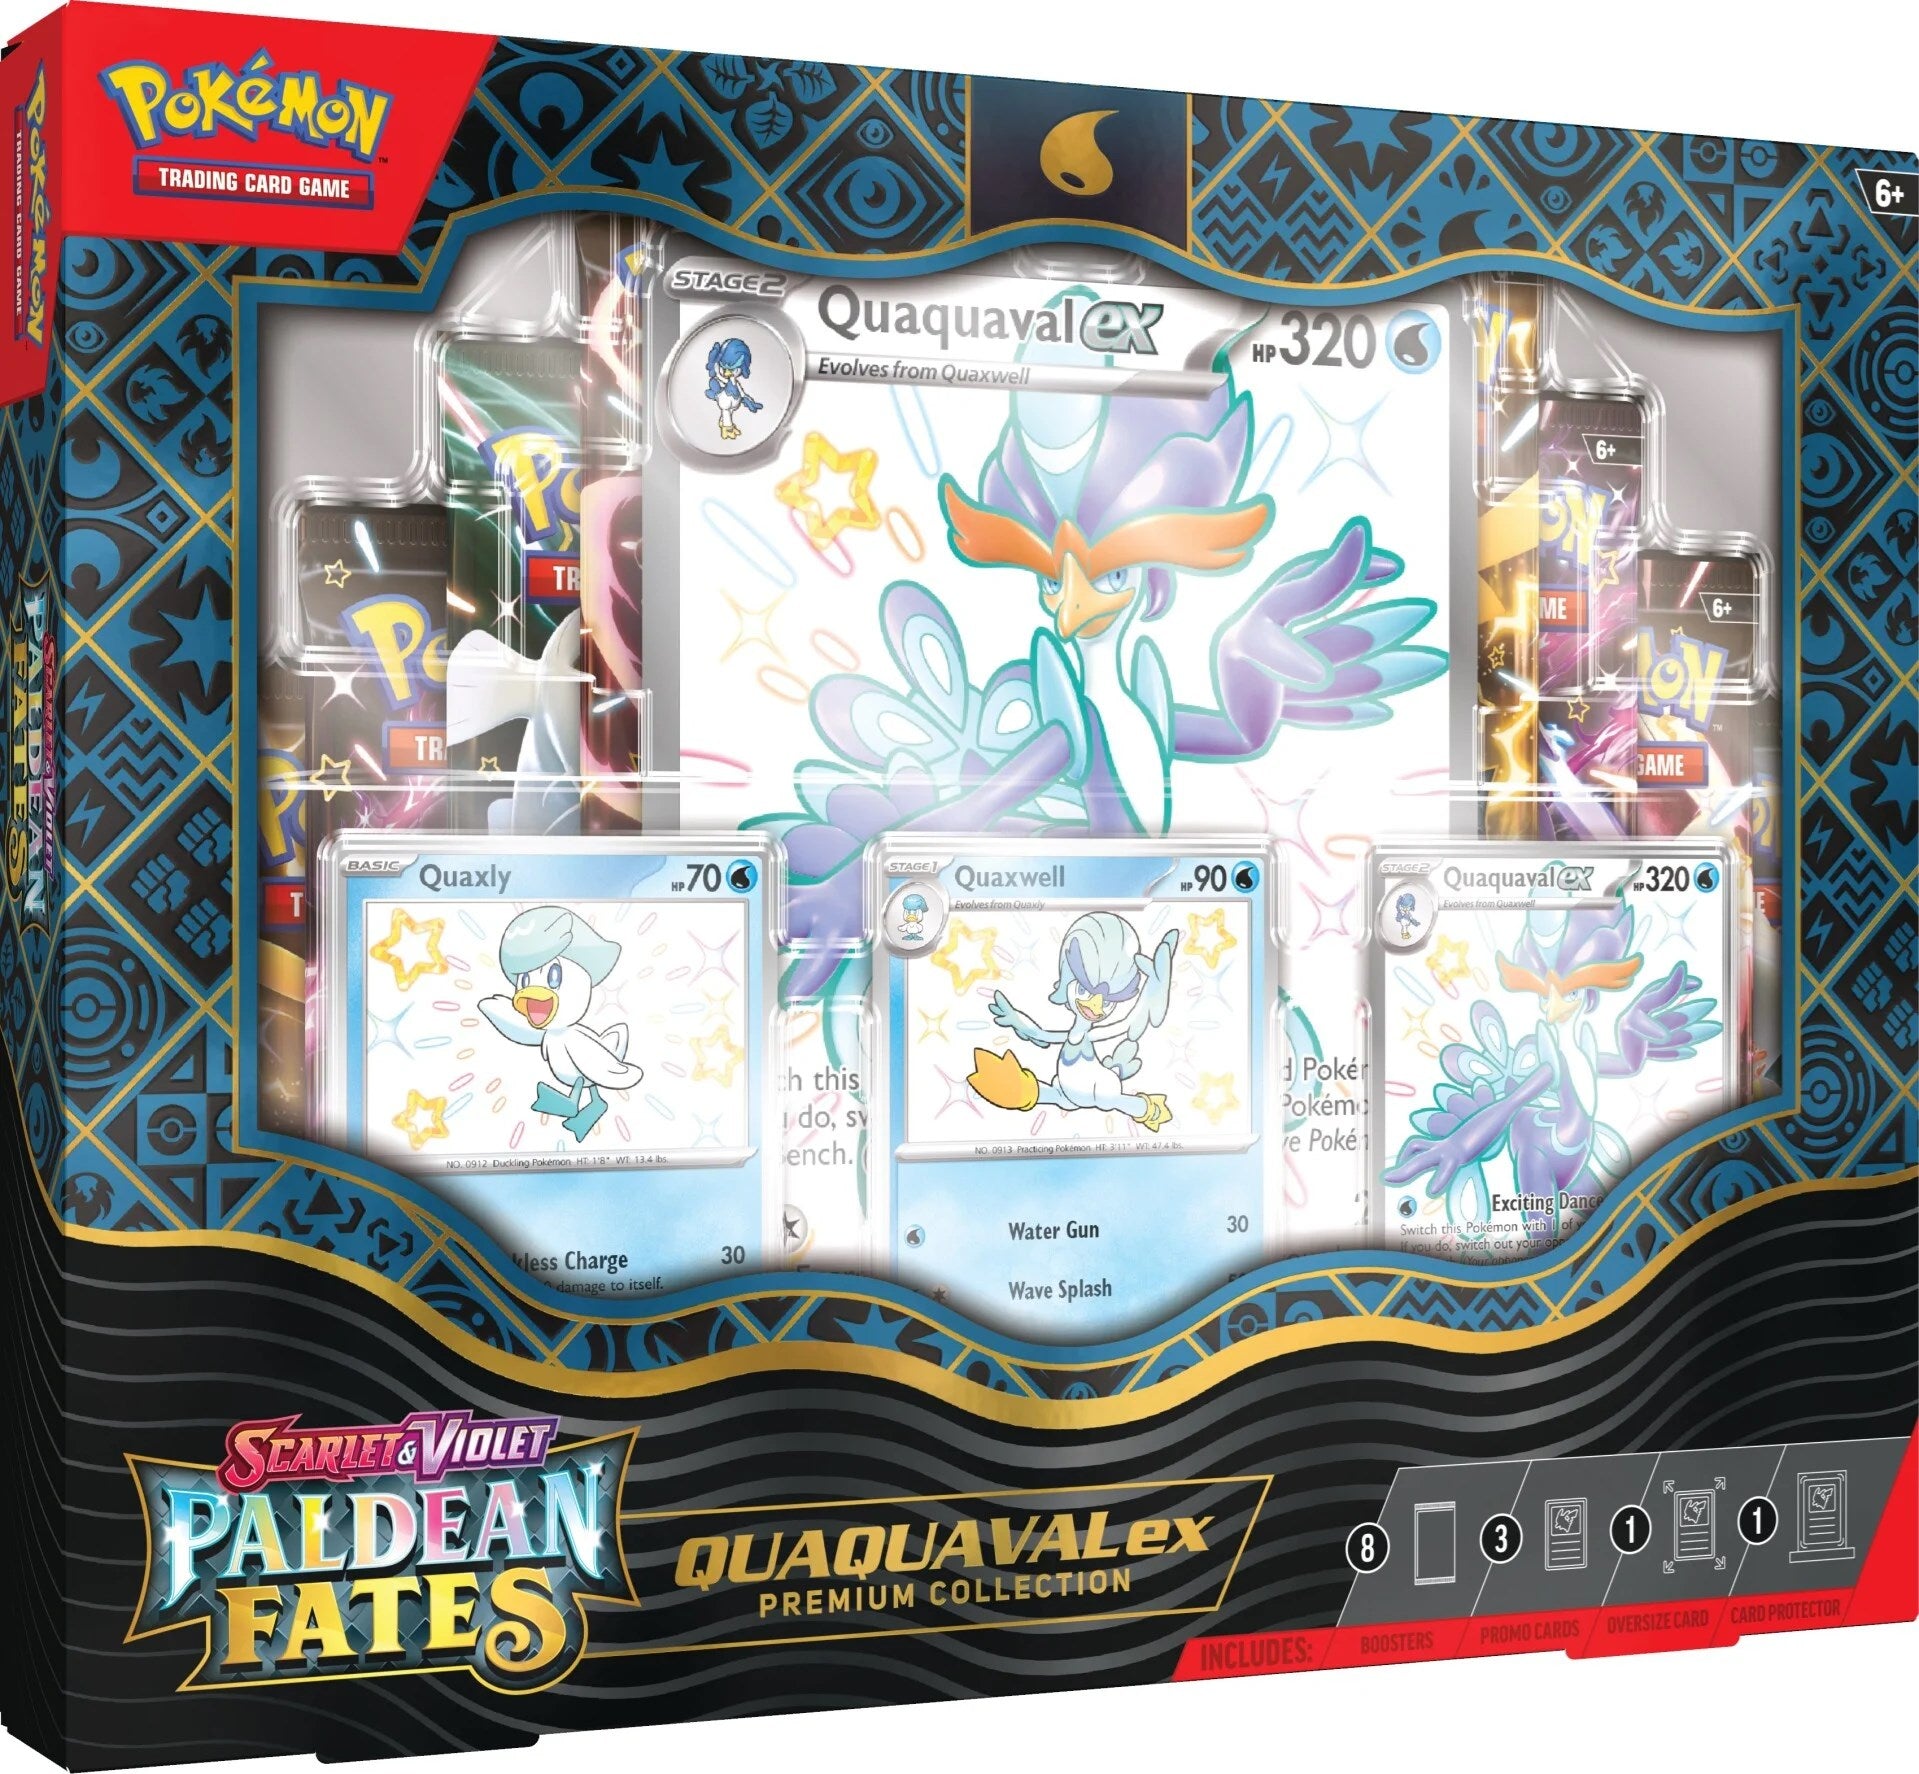 Pokémon Trading Card Game - Scarlet & Violet: Paldean Fates - Premium Collection (Quaquaval ex) | Viridian Forest